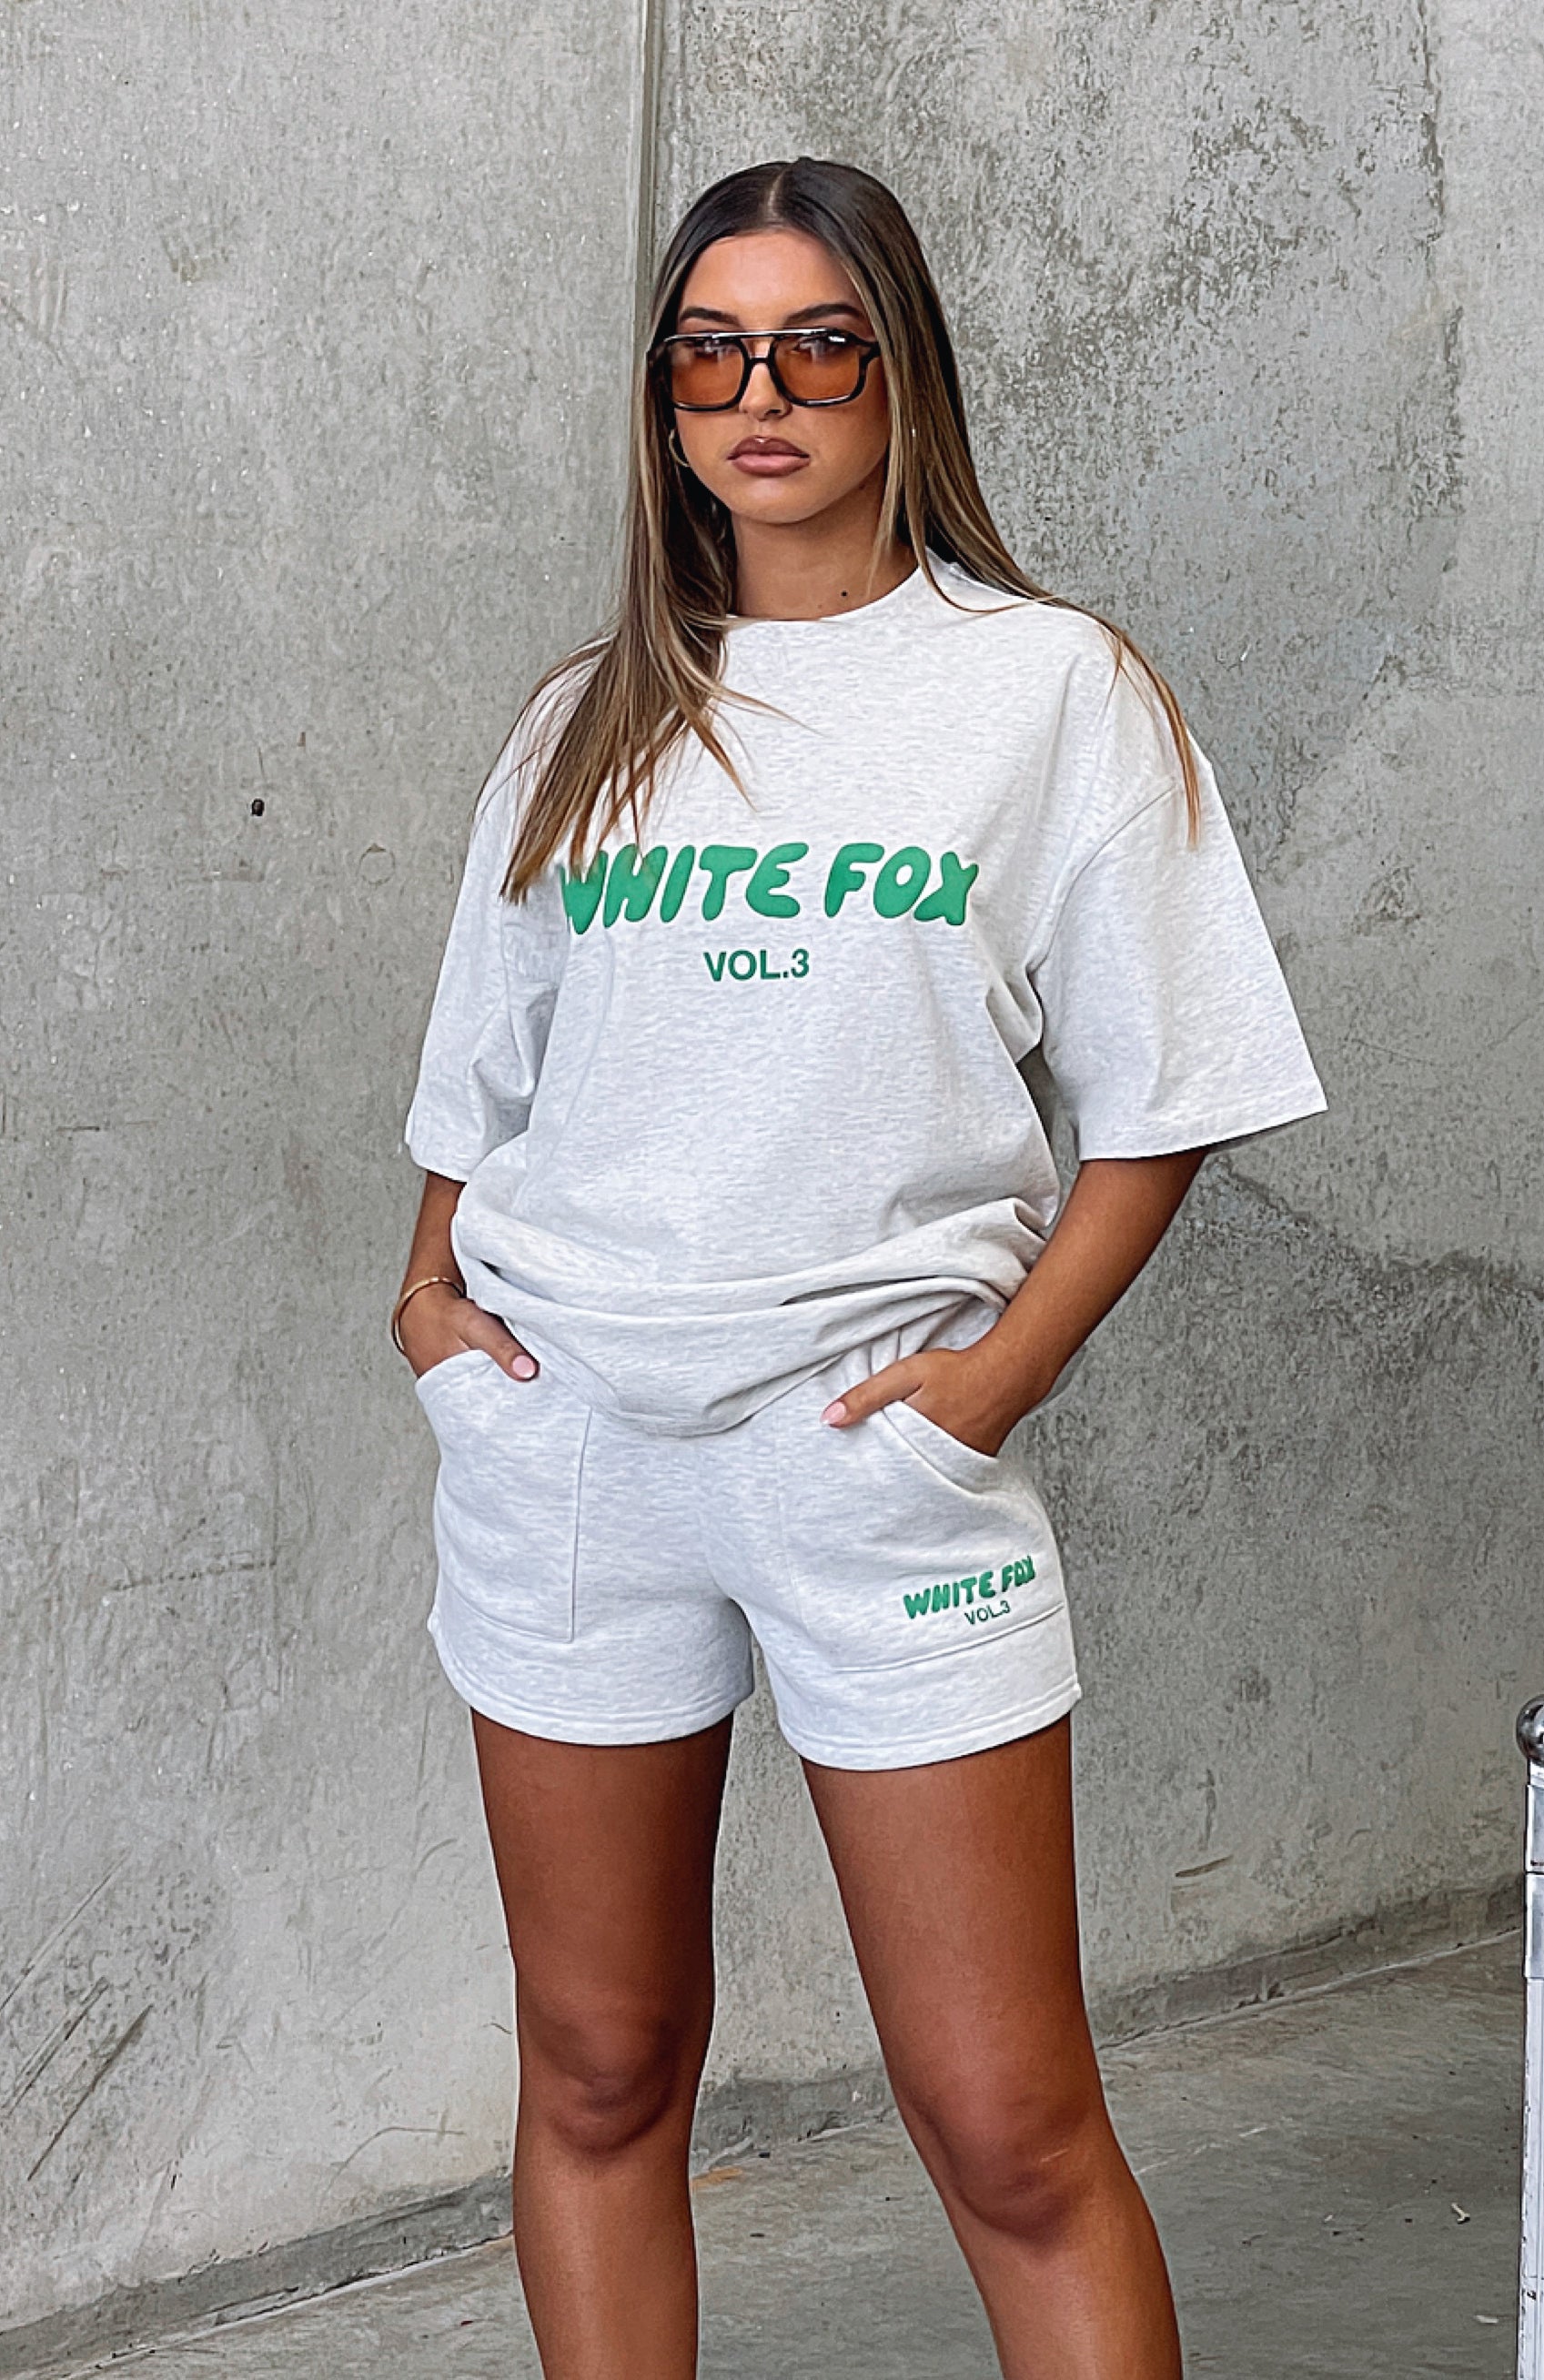 15% off promo code for white fox #whitefoxboutique #whitefox